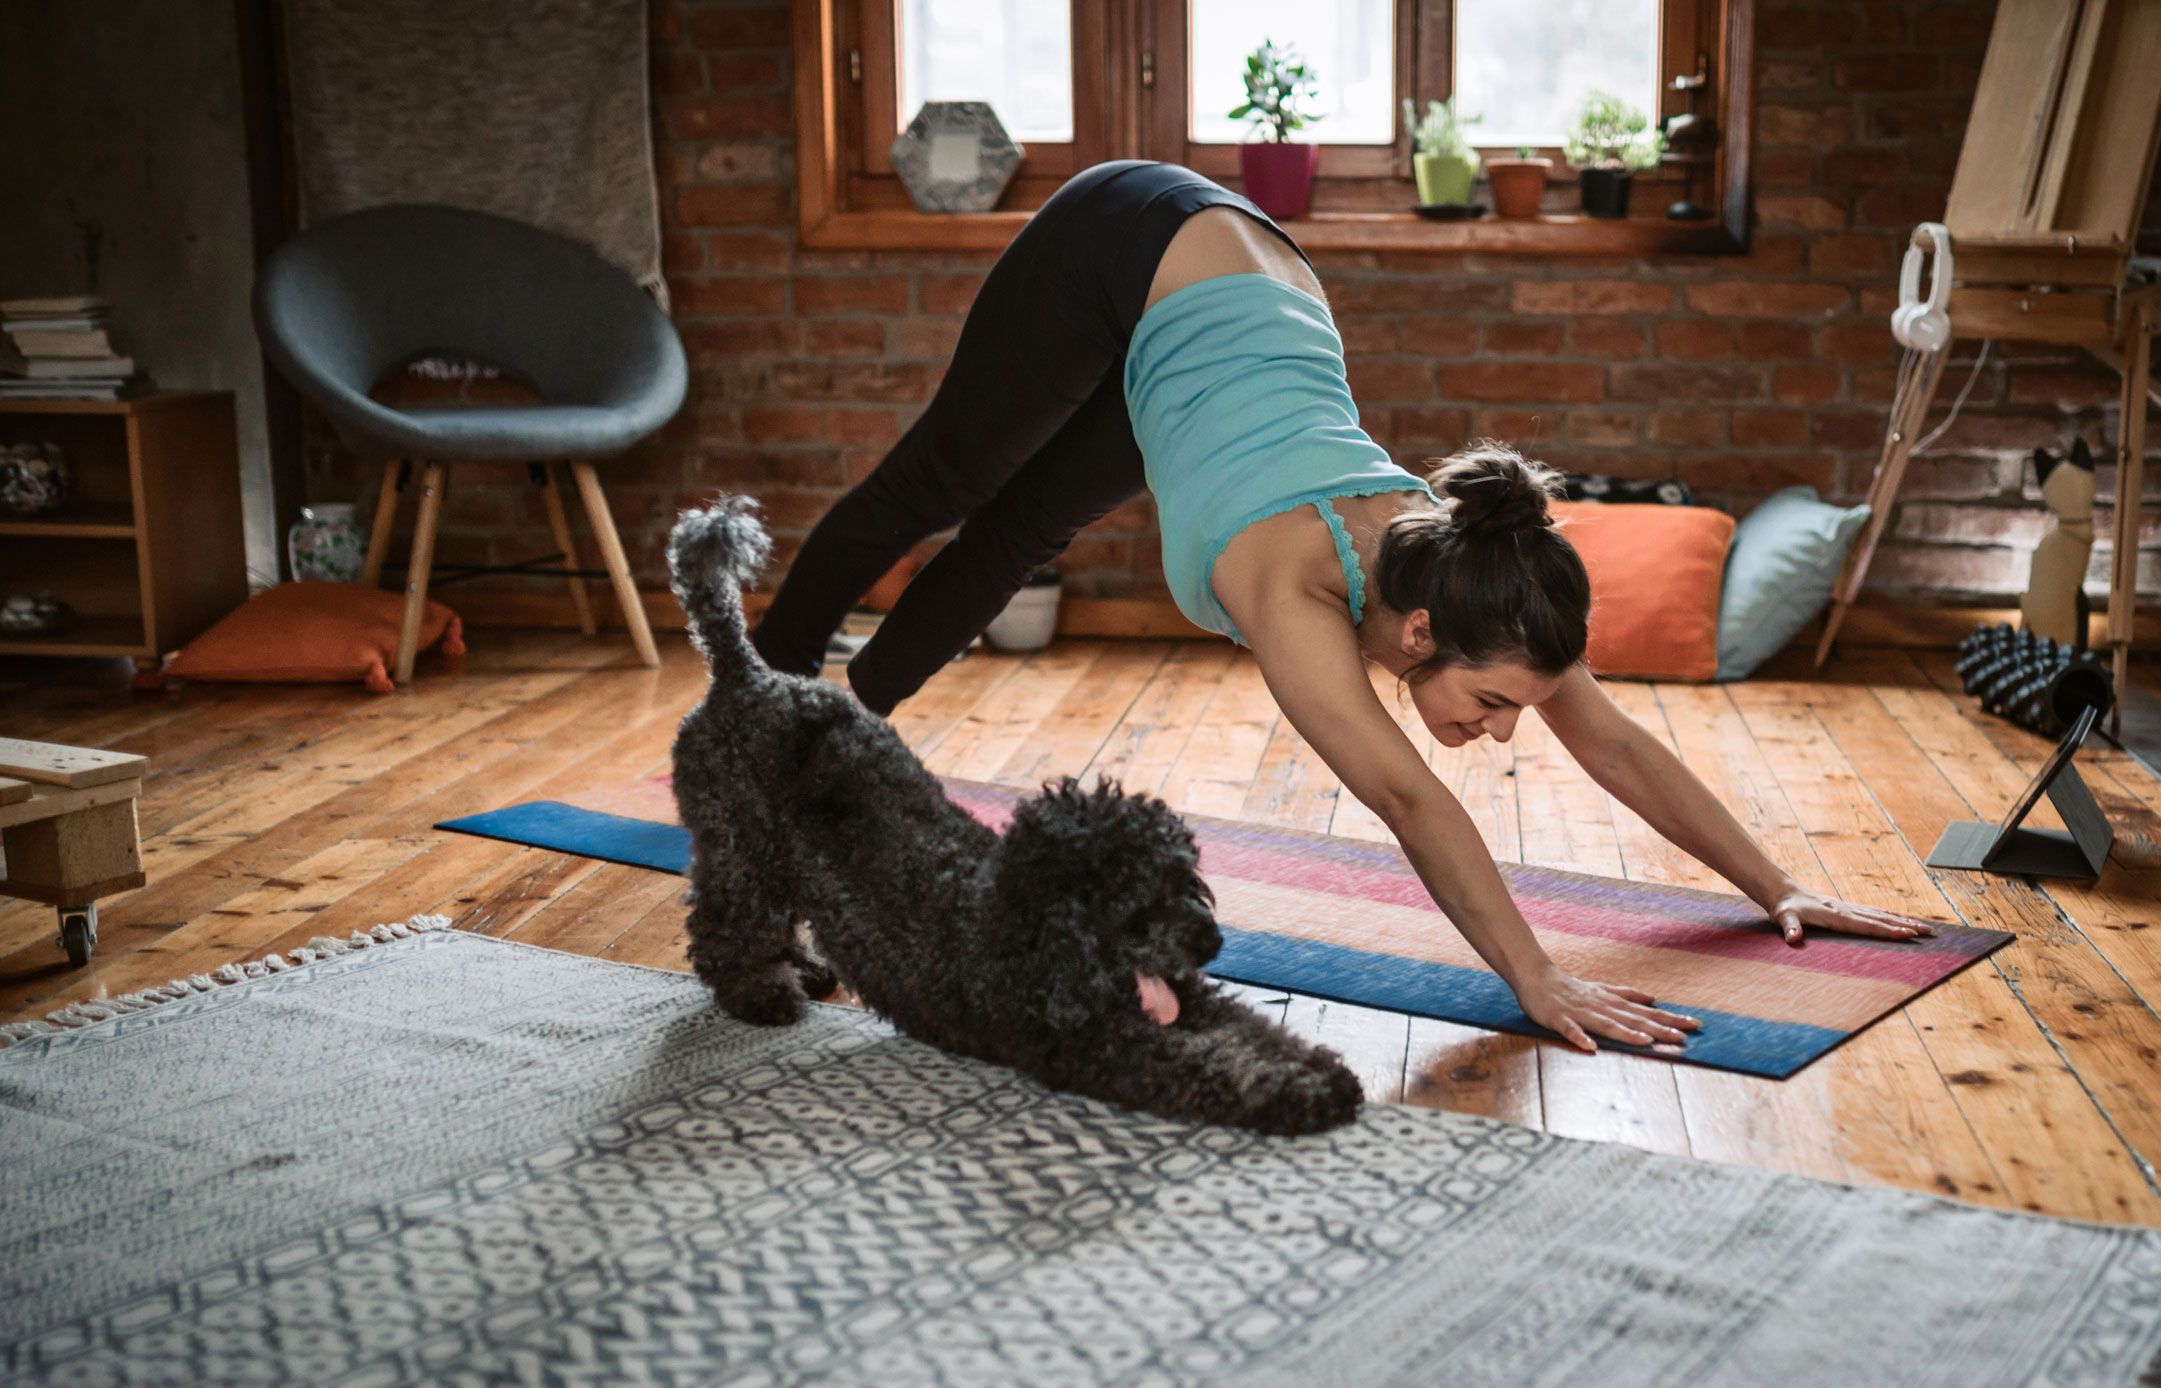 Frau praktiziert Yoga, ihr Hund streckt sich ebenfalls.